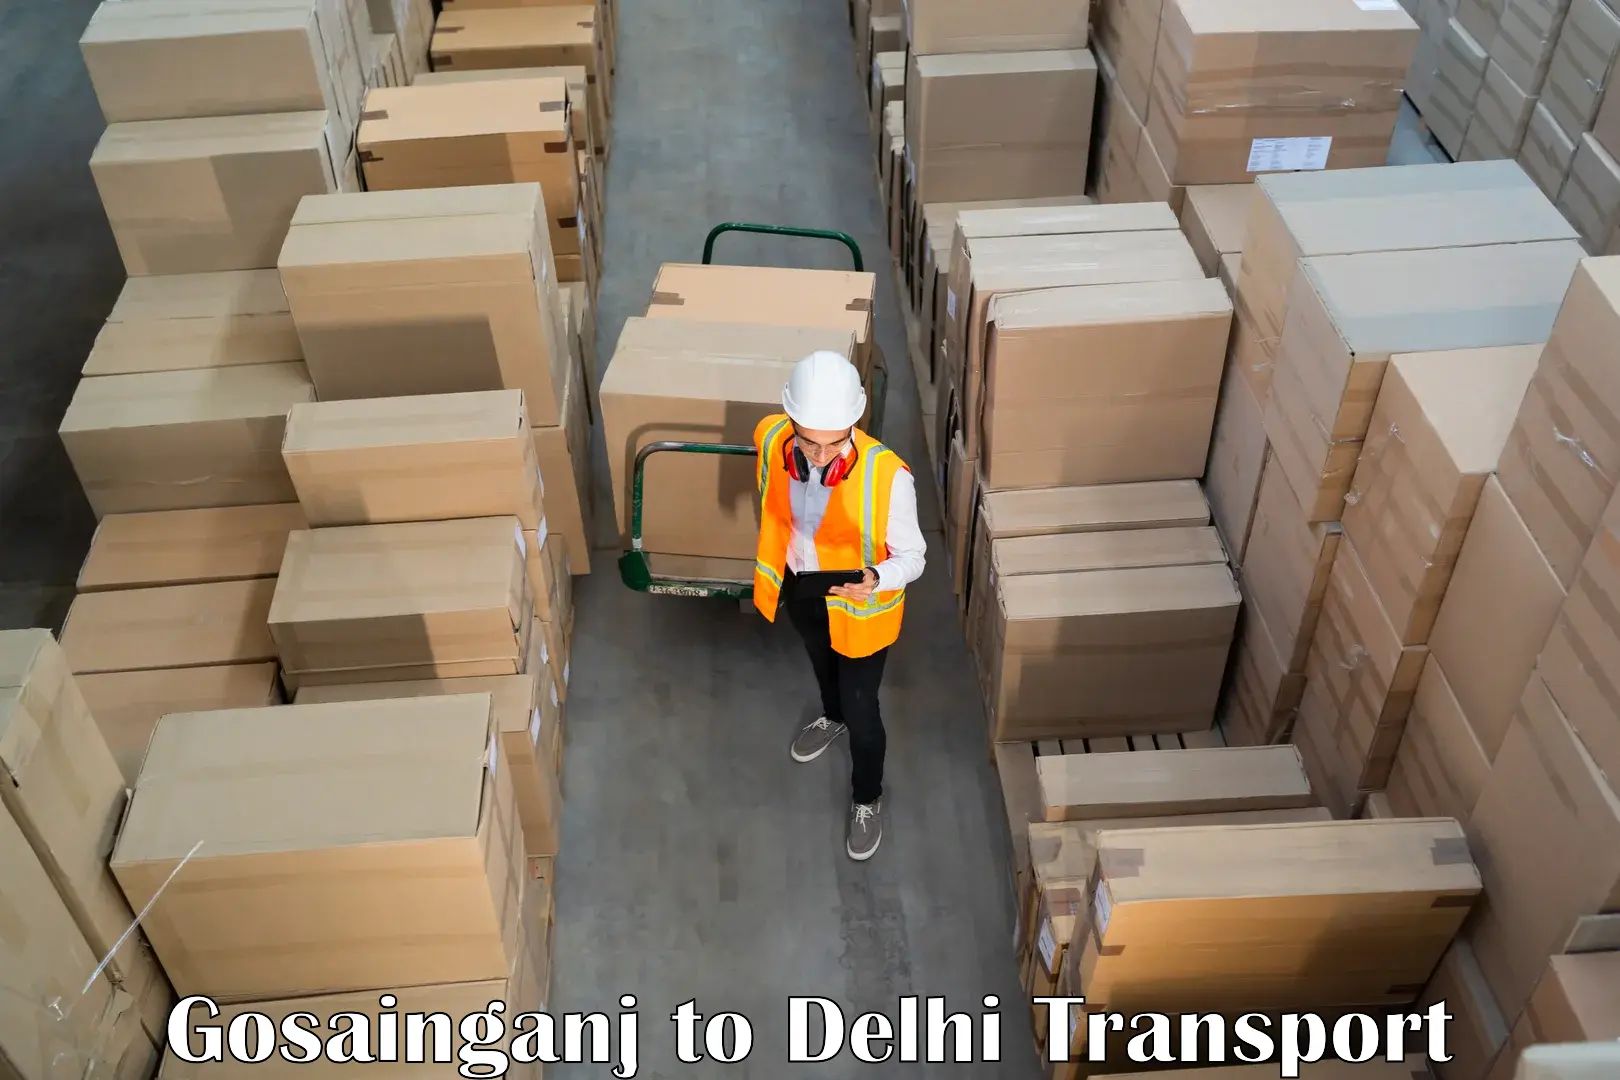 Shipping partner Gosainganj to NIT Delhi